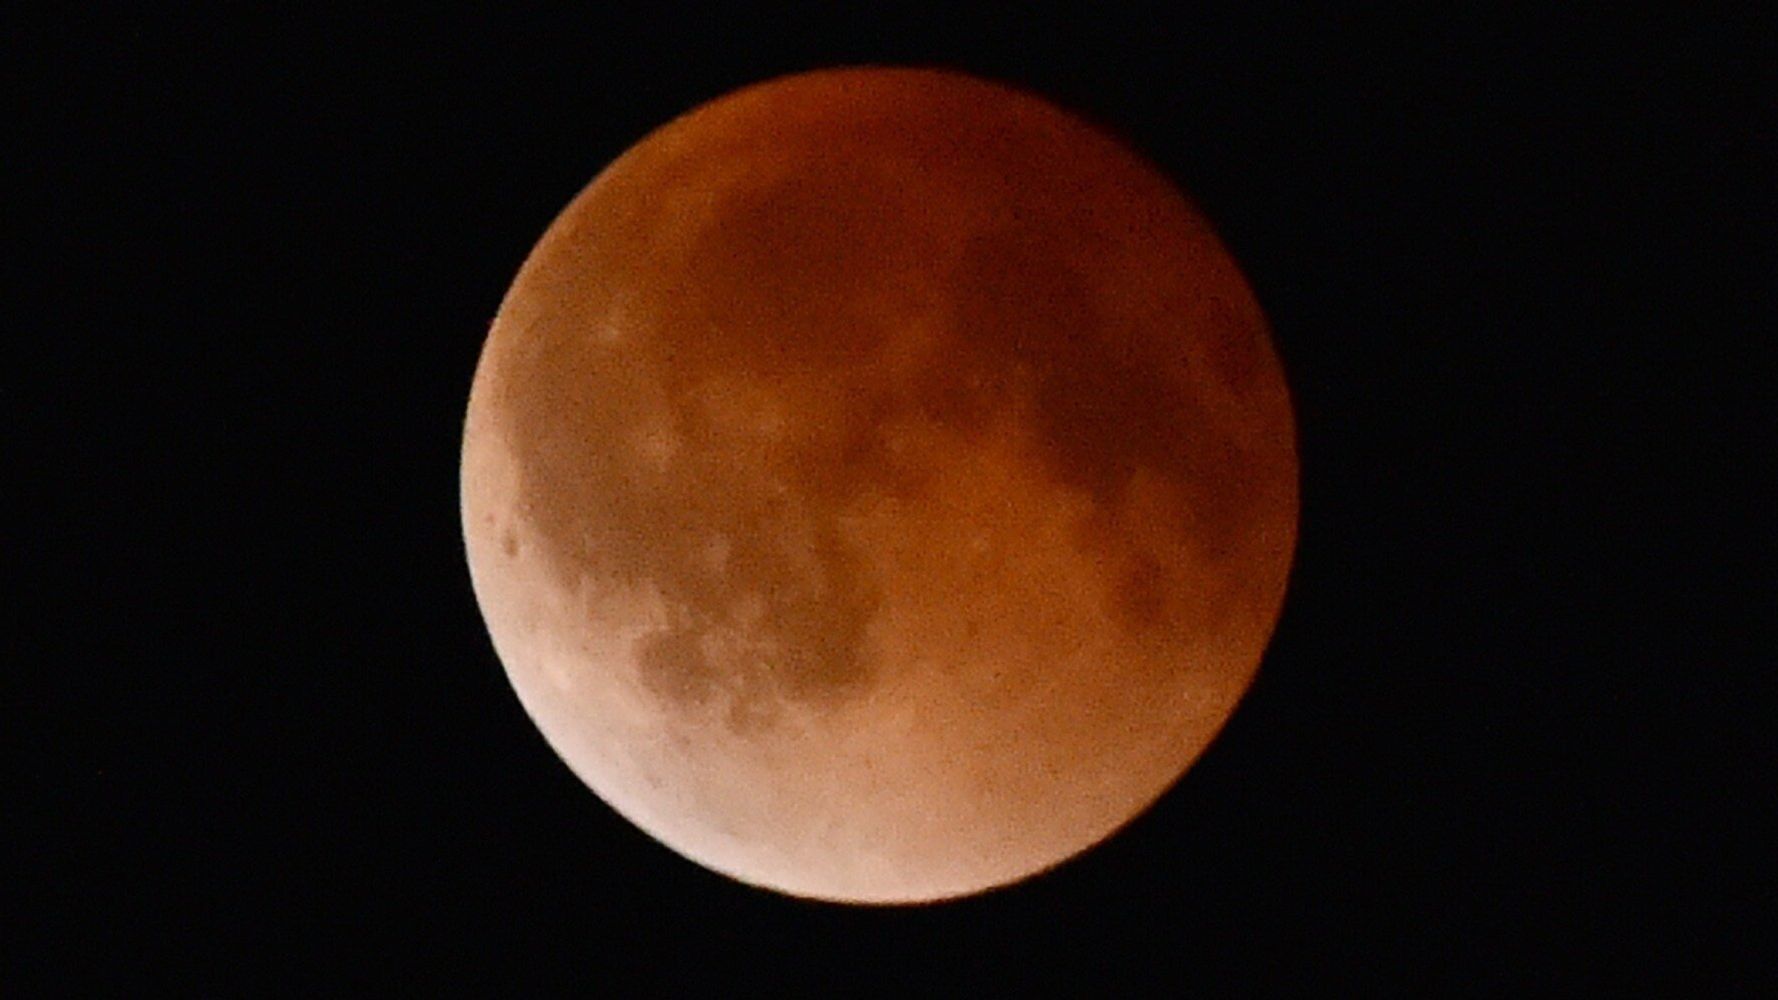 Watch The Blood Moon Lunar Eclipse LIVE HuffPost UK Tech